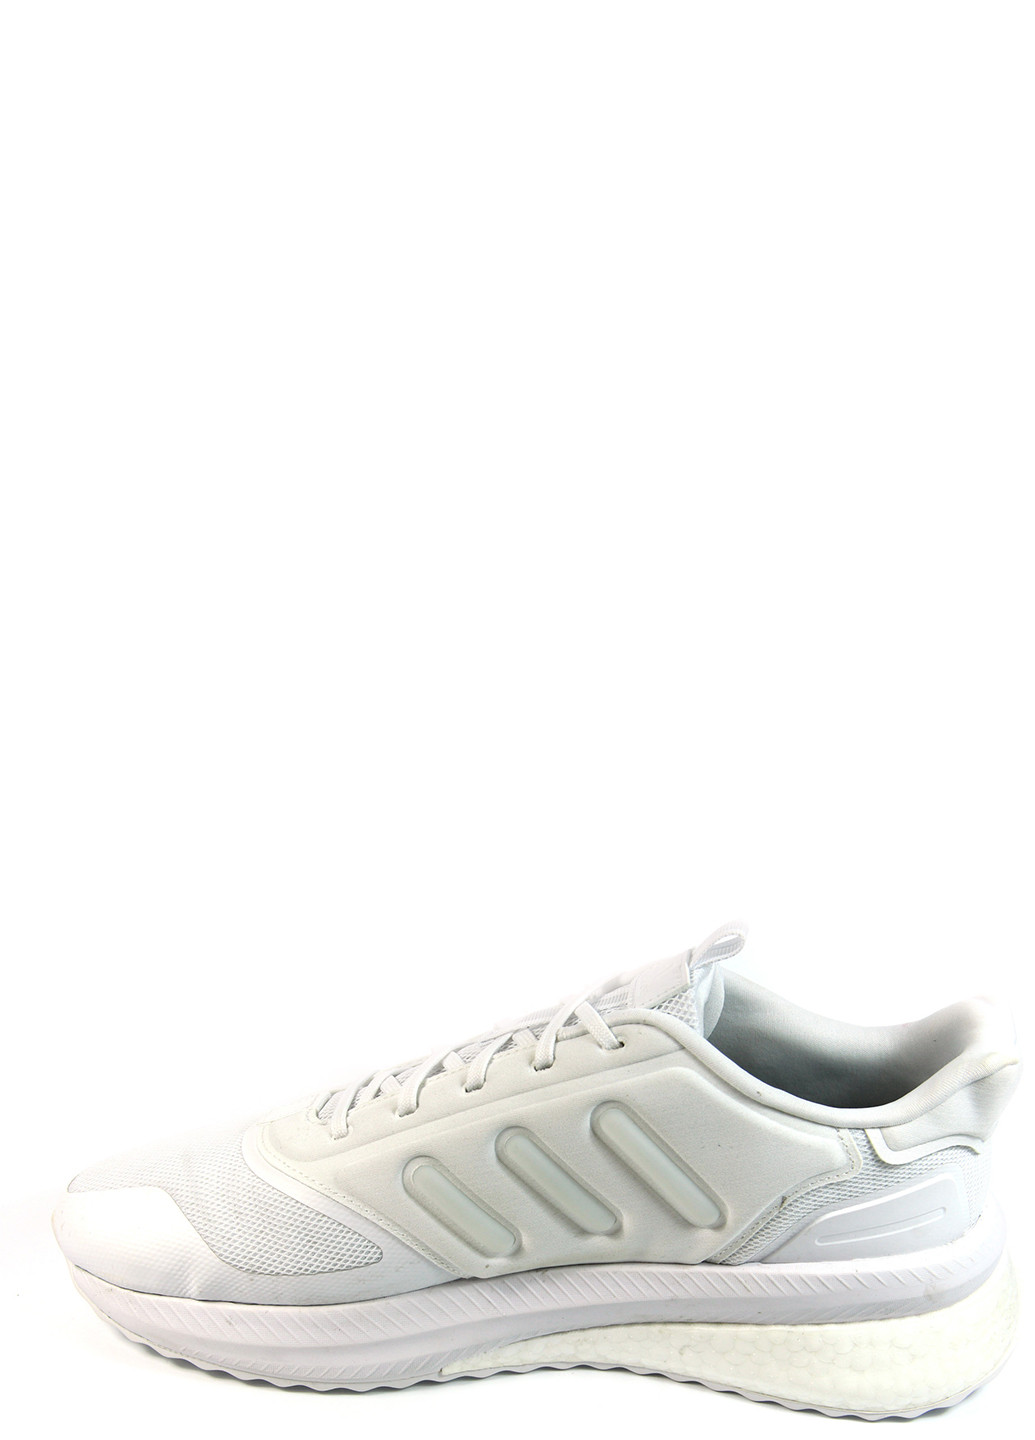 Белые демисезонные мужские кроссовки x_plrphase ig4767 adidas